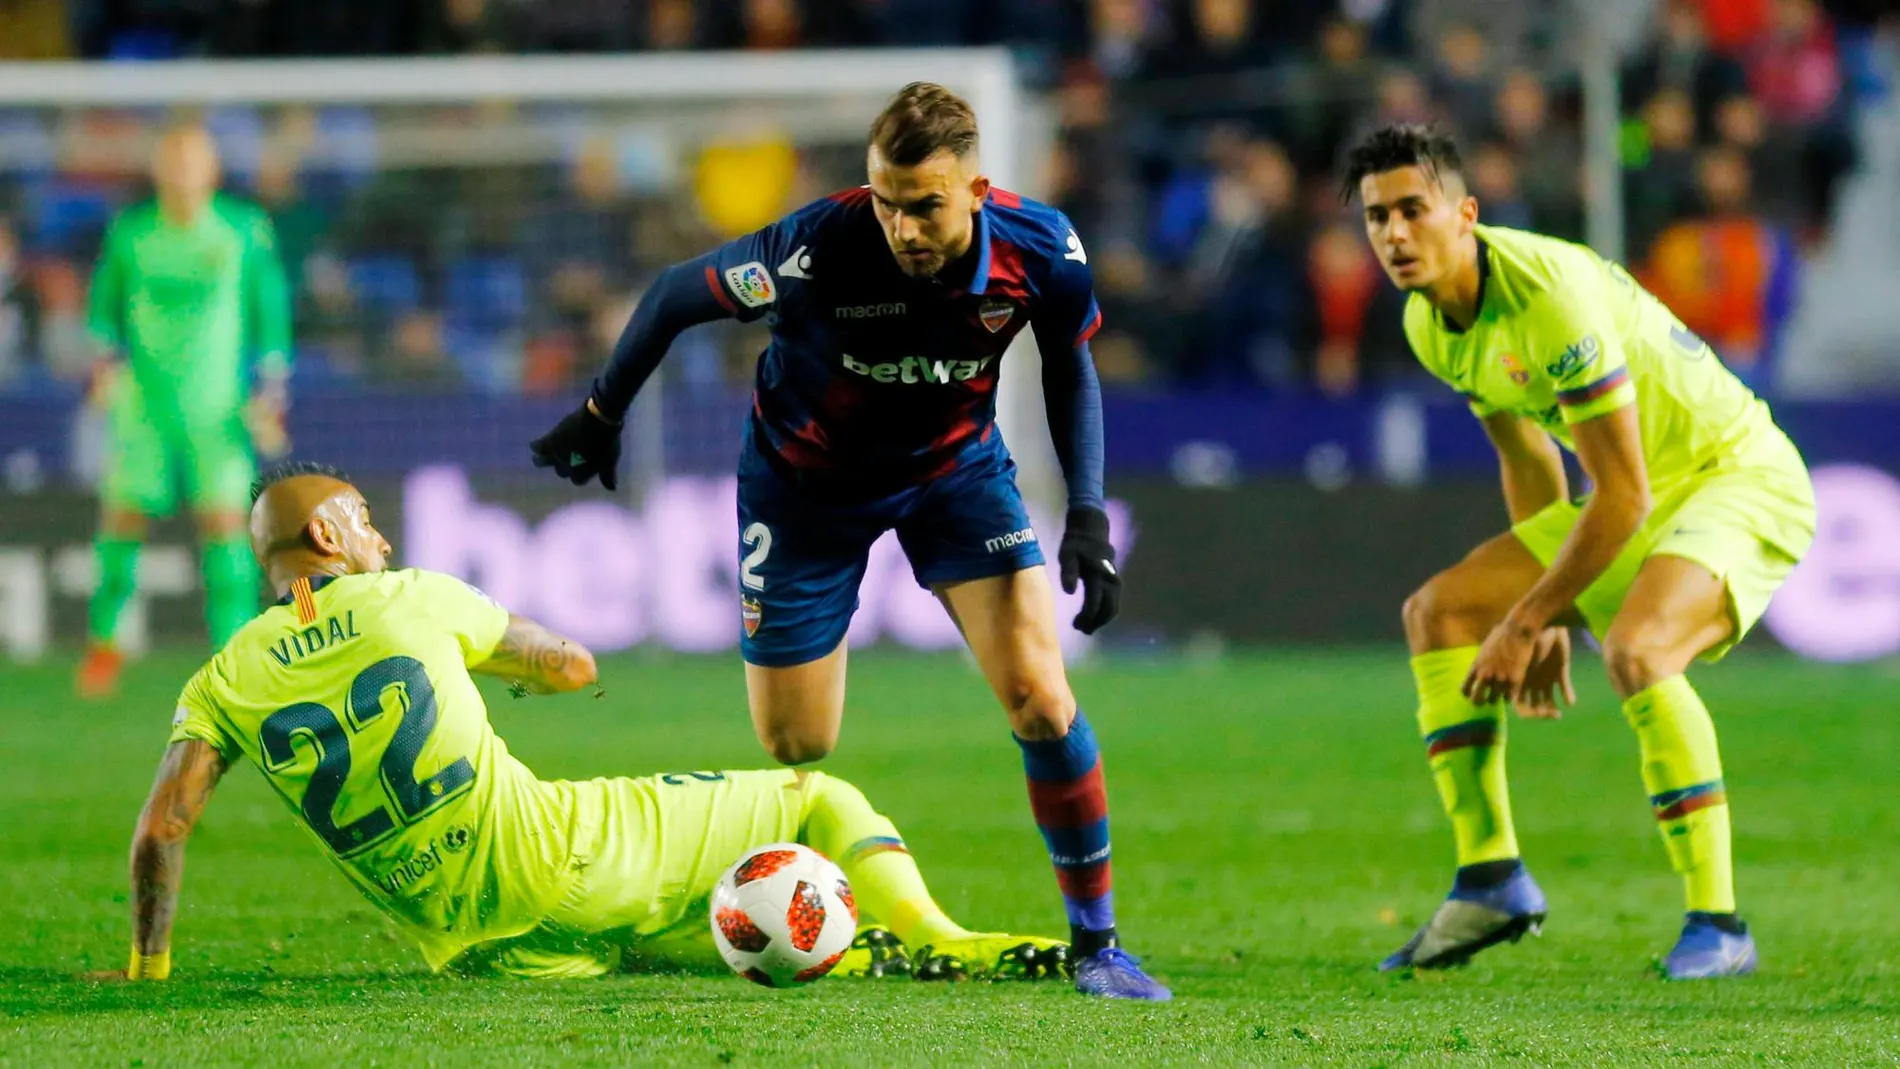 Disputa por el balón entre Borja Mayoral, Arturo Vidal y Chumi, jugador por el cual se ha podido producir una posible alineación indebida en la eliminatoria de Copa del Rey entre el Levante y el Barcelona / REUTERS